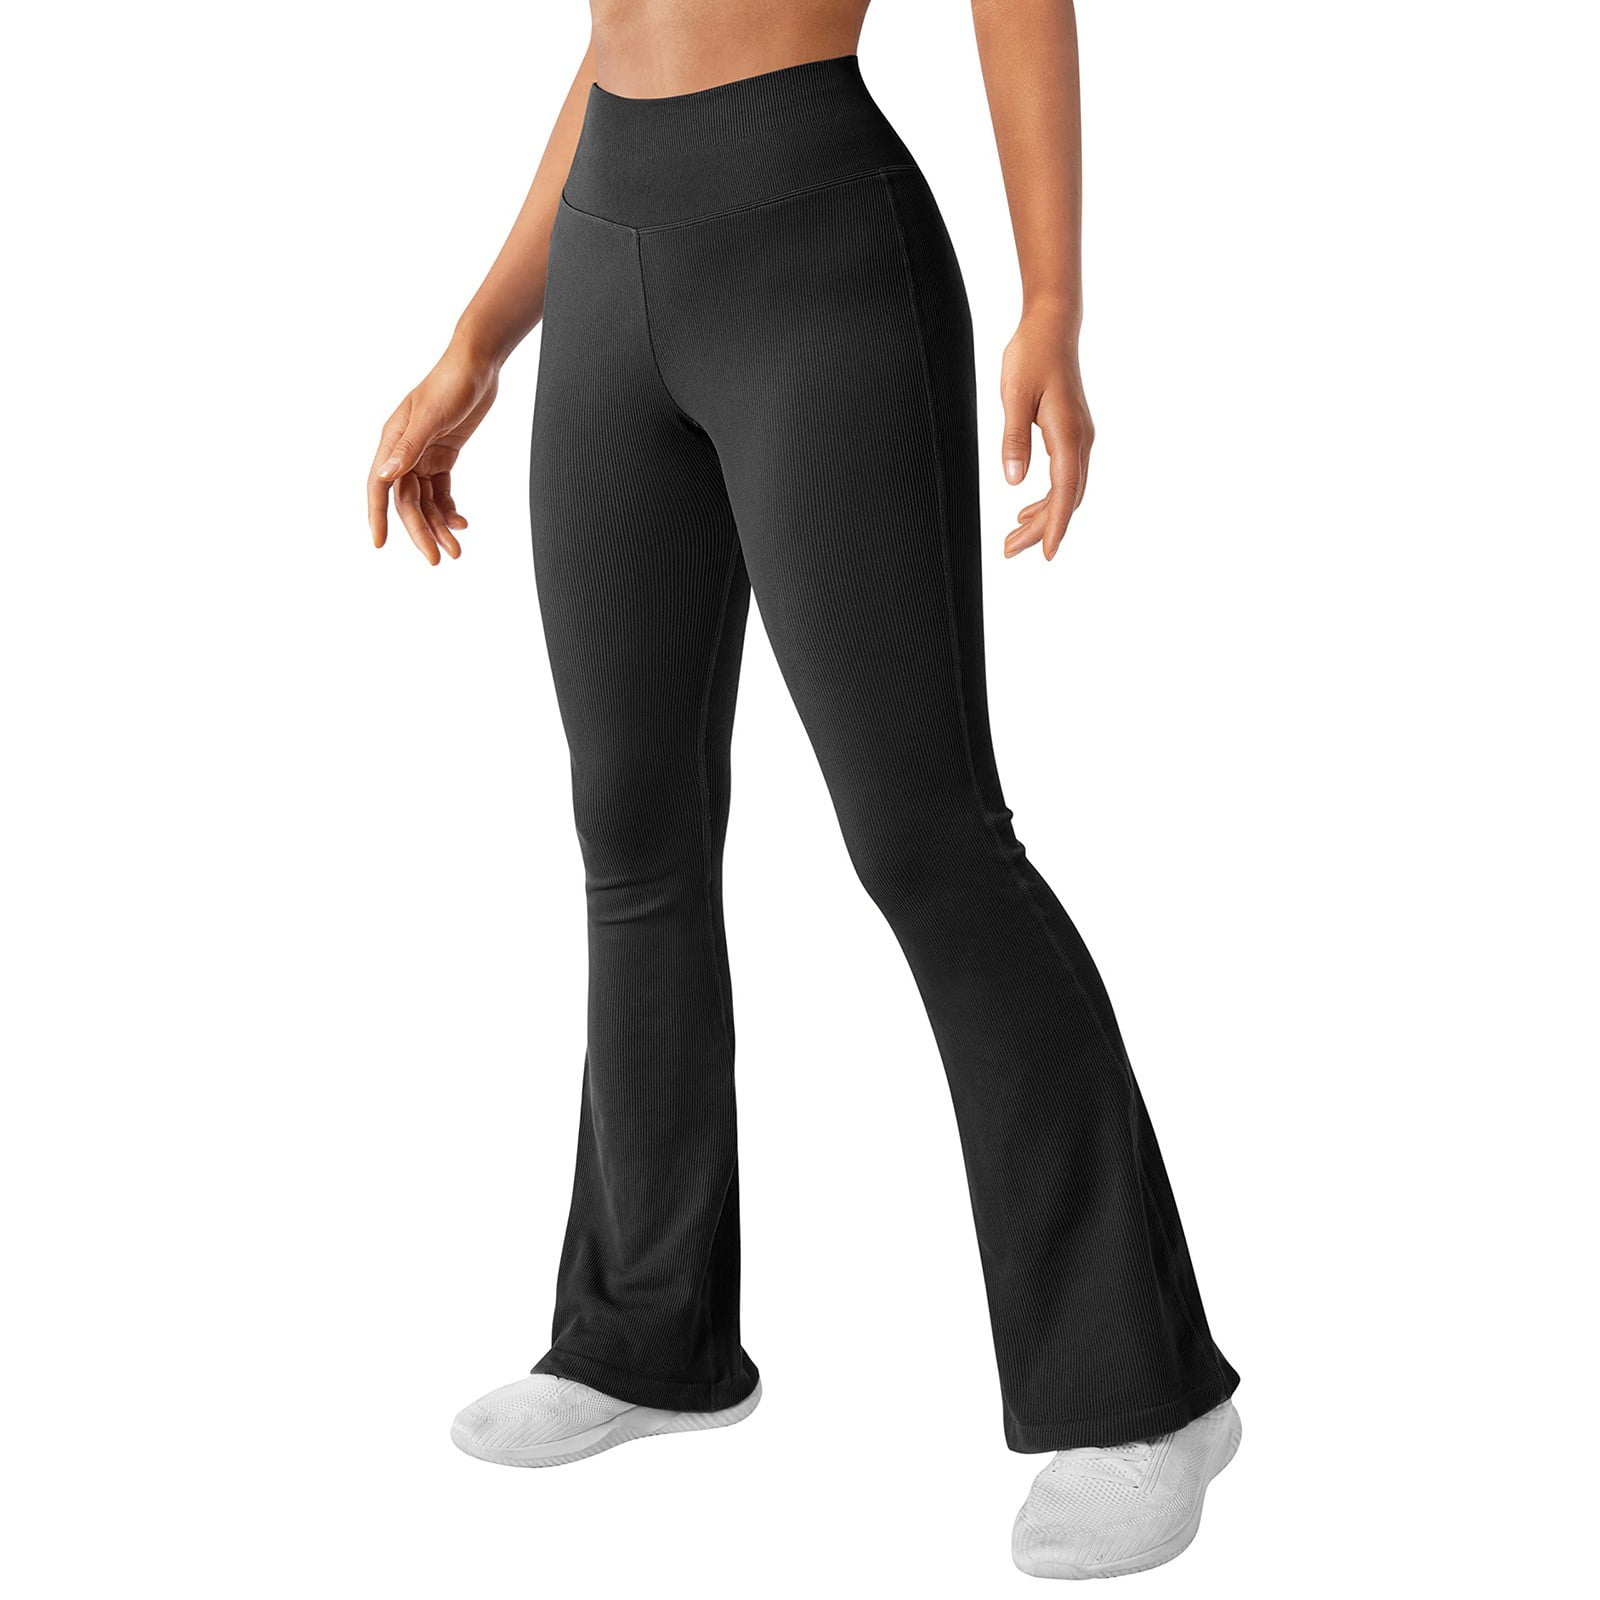  Petite Womens Bootcut Yoga Pants Long Workout Pant